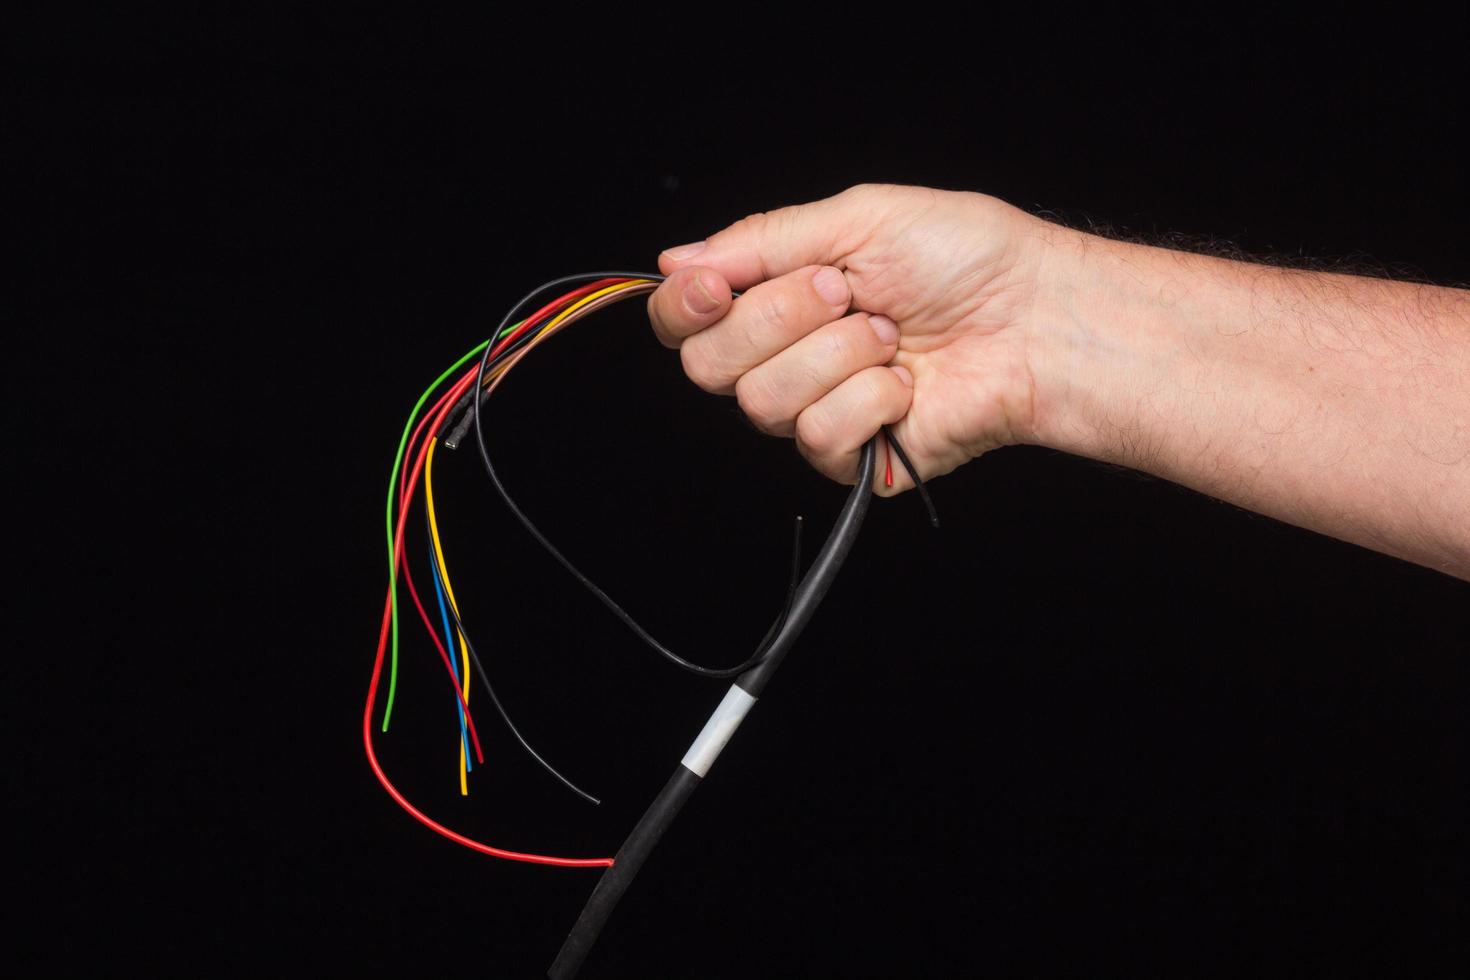 elektrisk kabel i handen foto